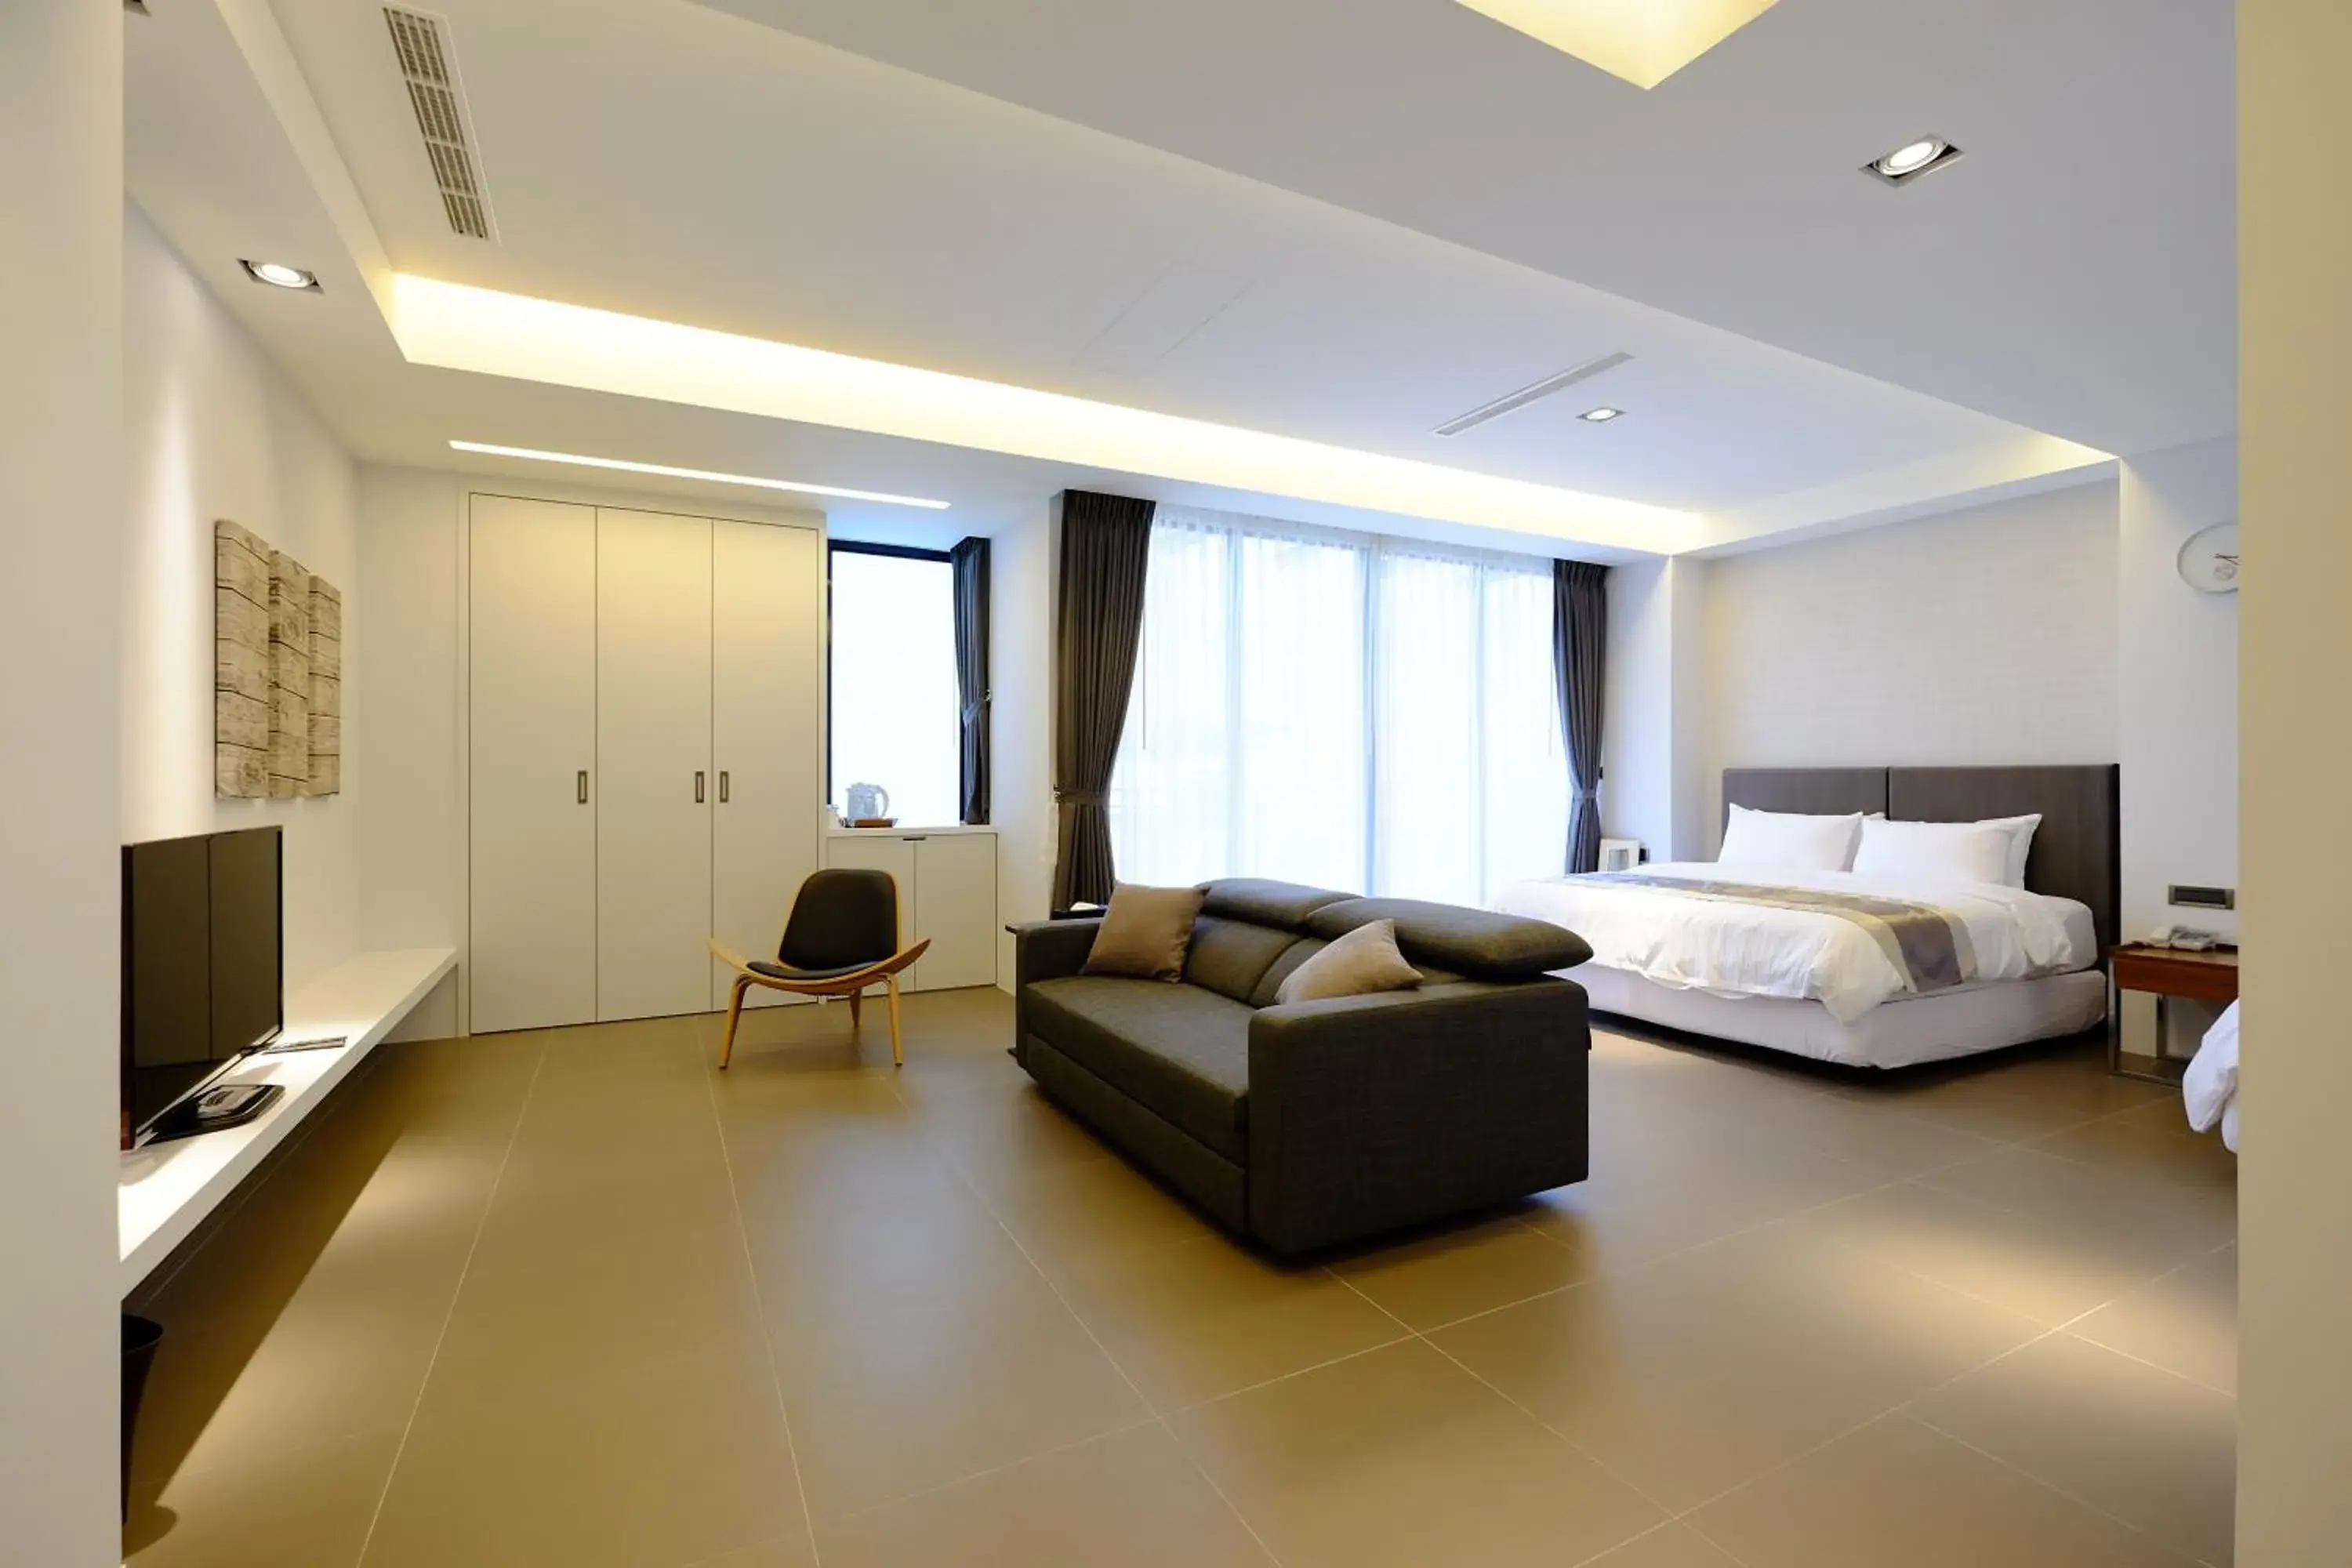 Living room in Tongzhan Design Inns